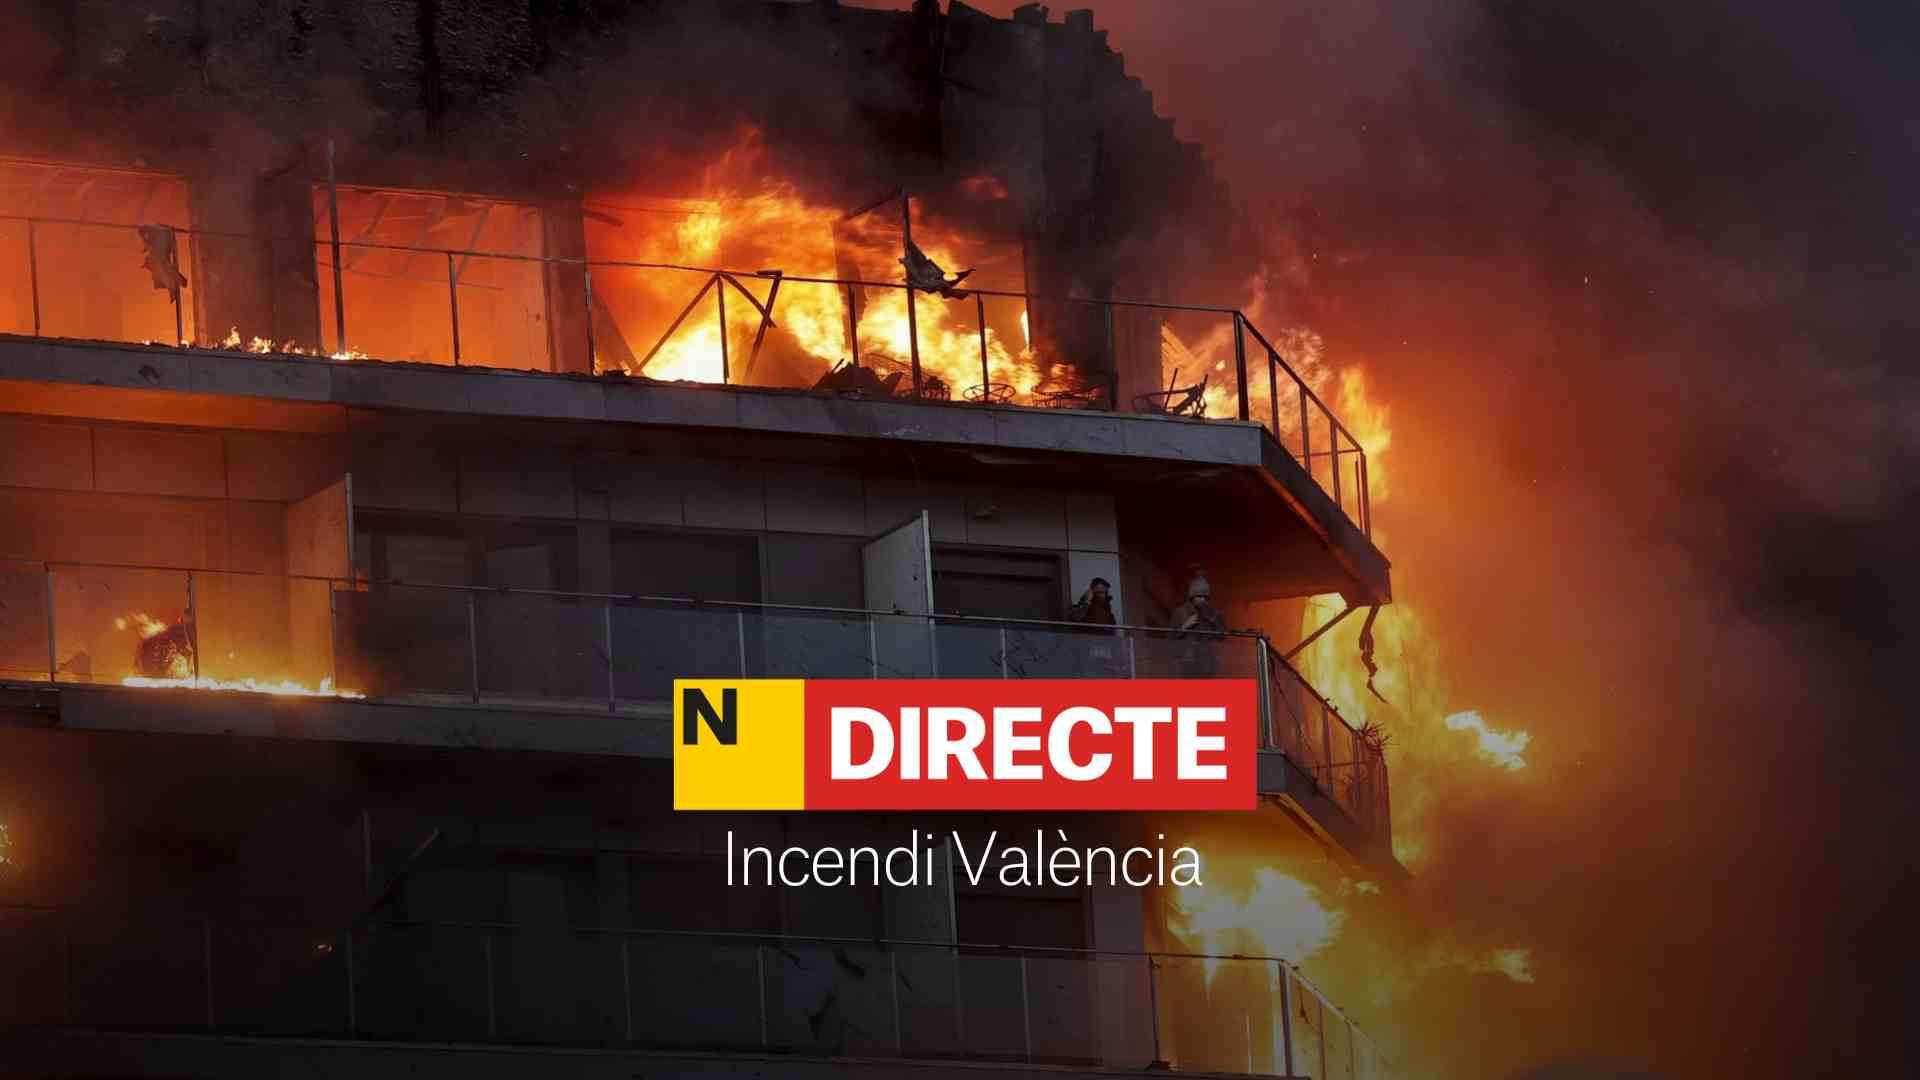 Incendi a València, DIRECTE | Última hora dels ferits, rescatats i foc a l'edifici de Campanar